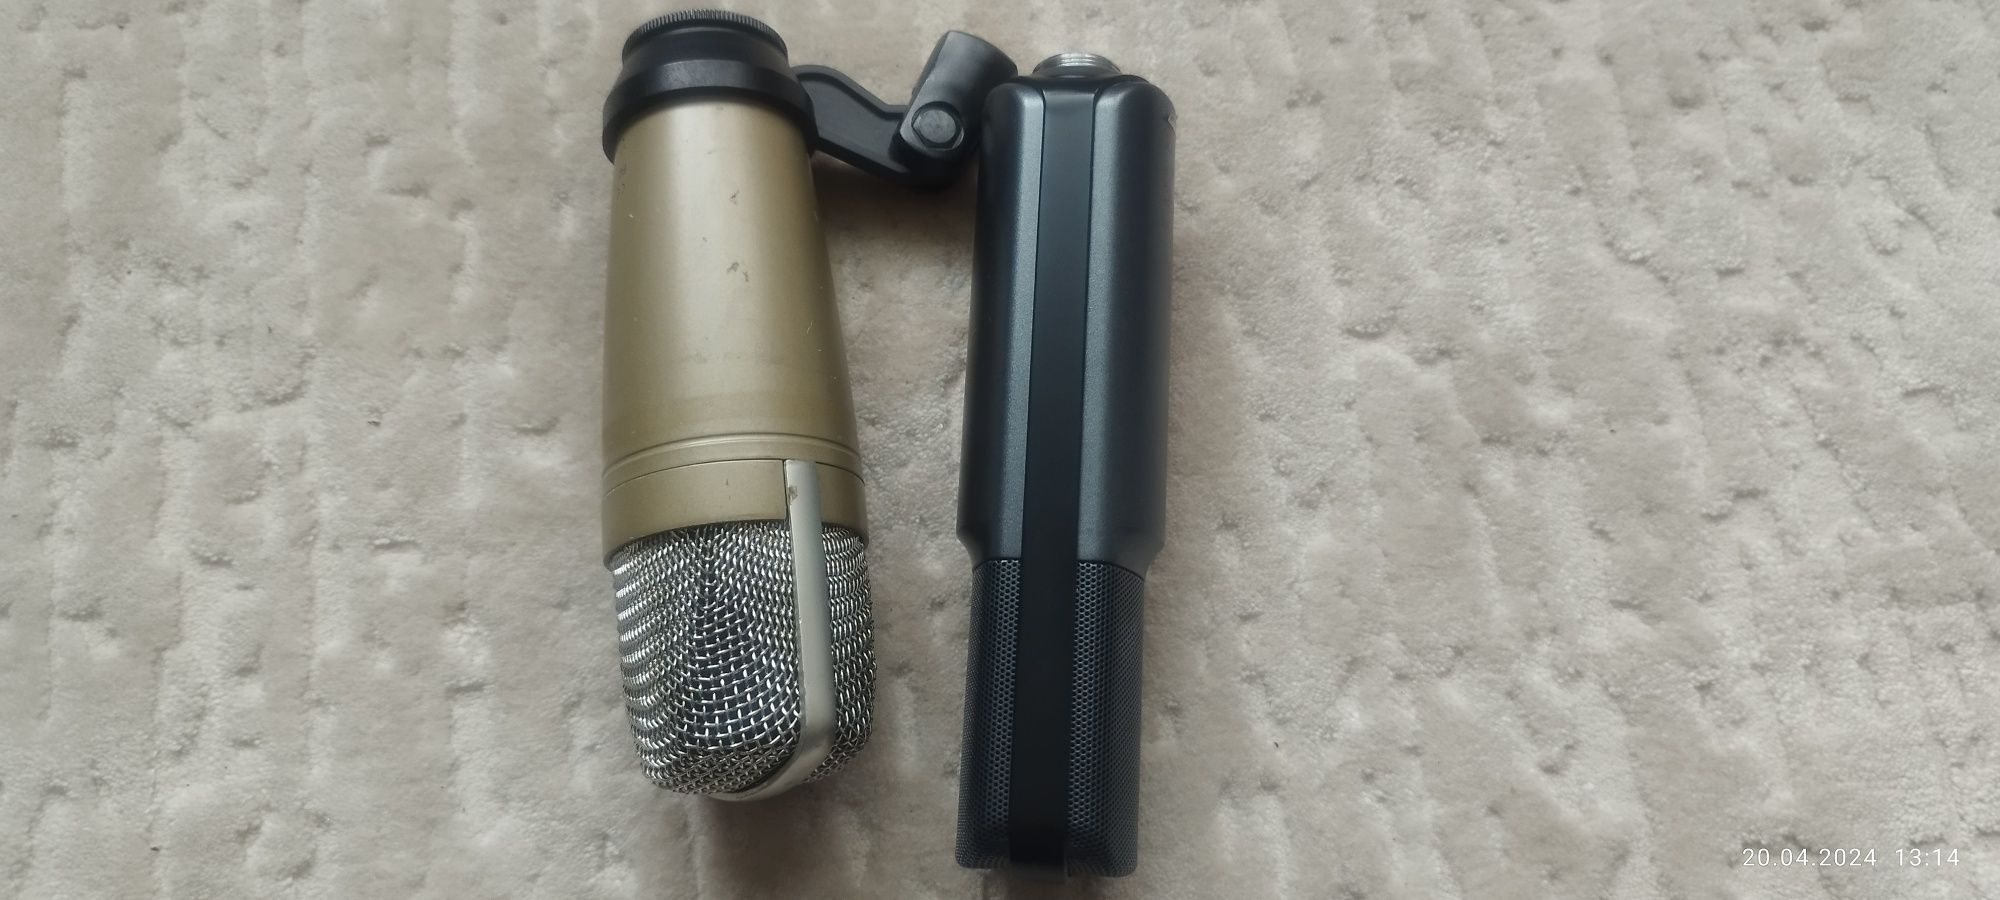 2 microfoane de studio folosite